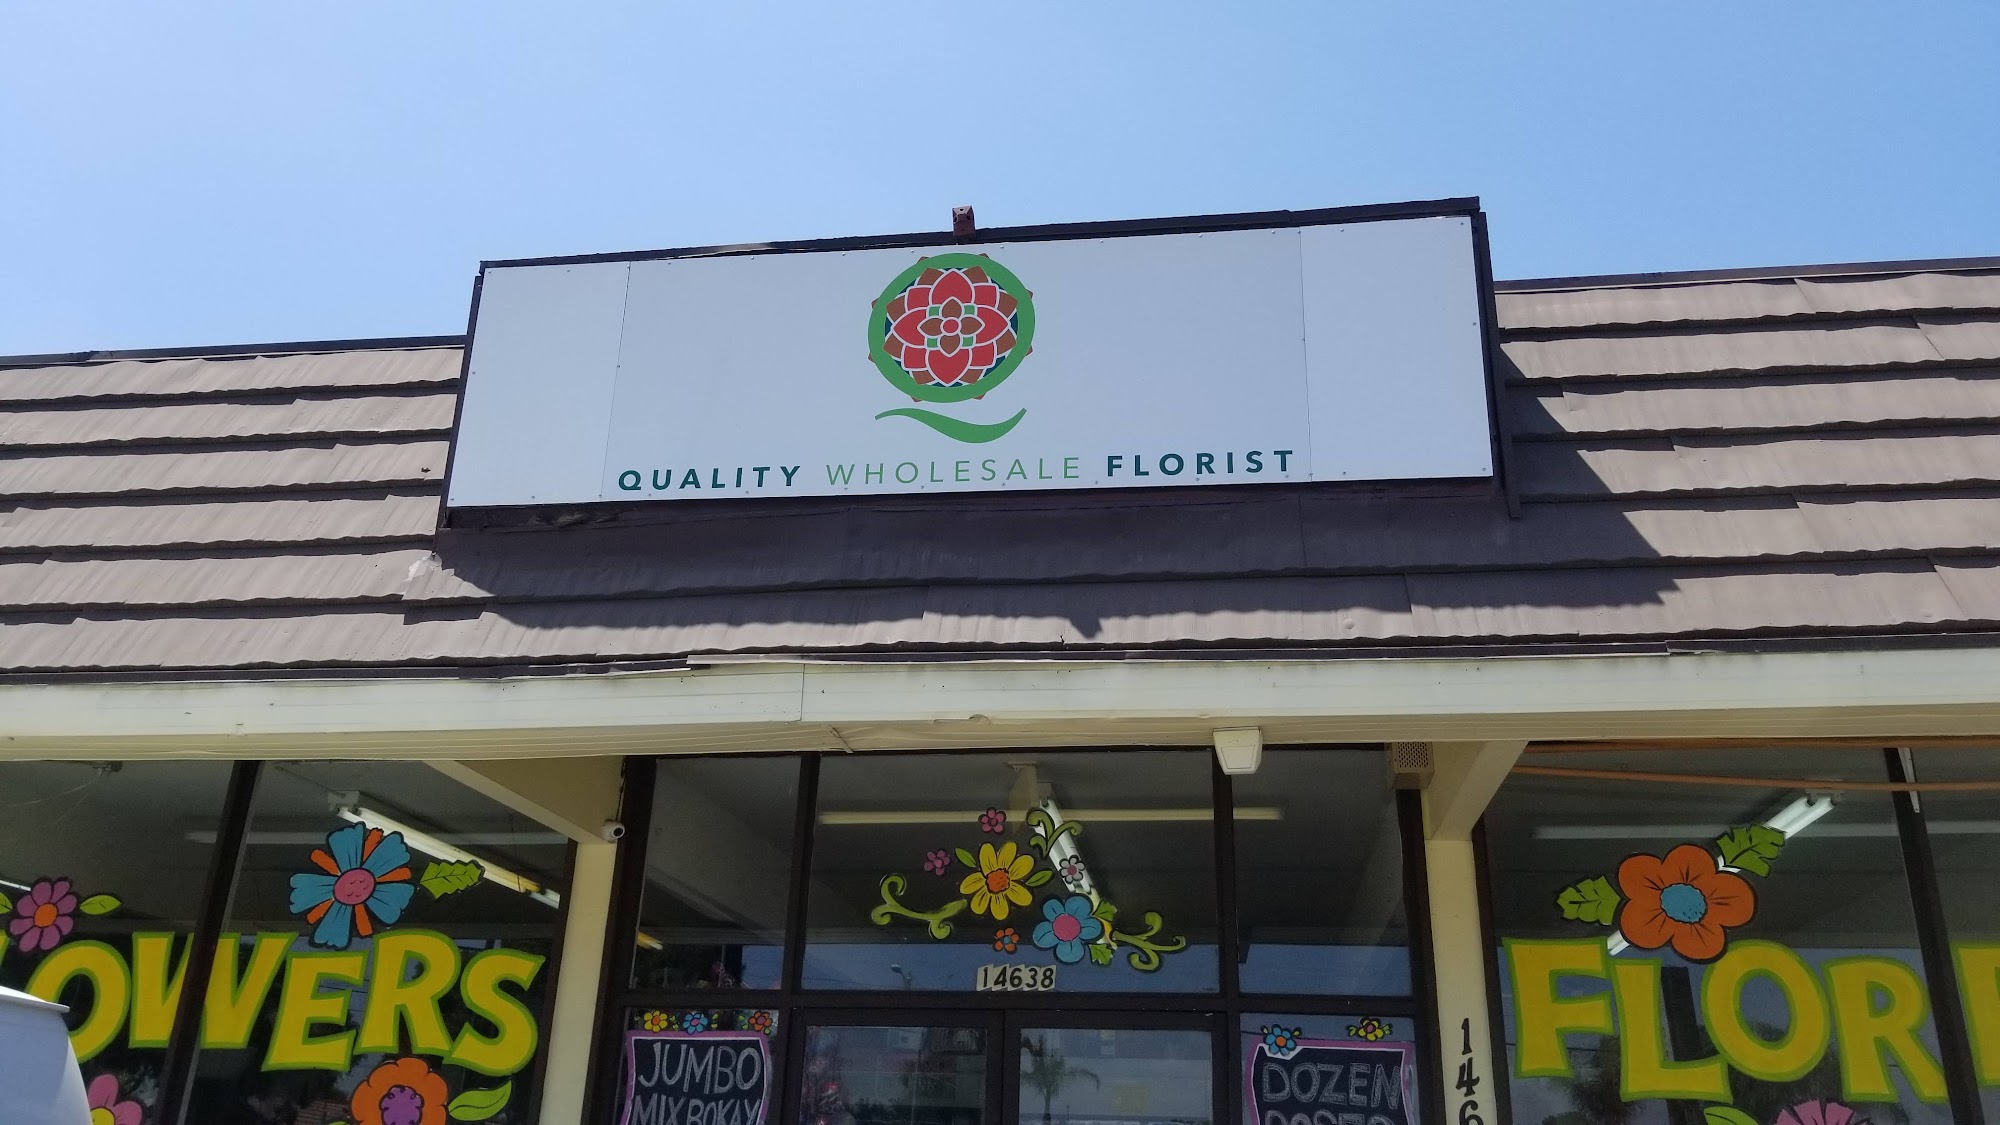 Quality Wholesale Florist